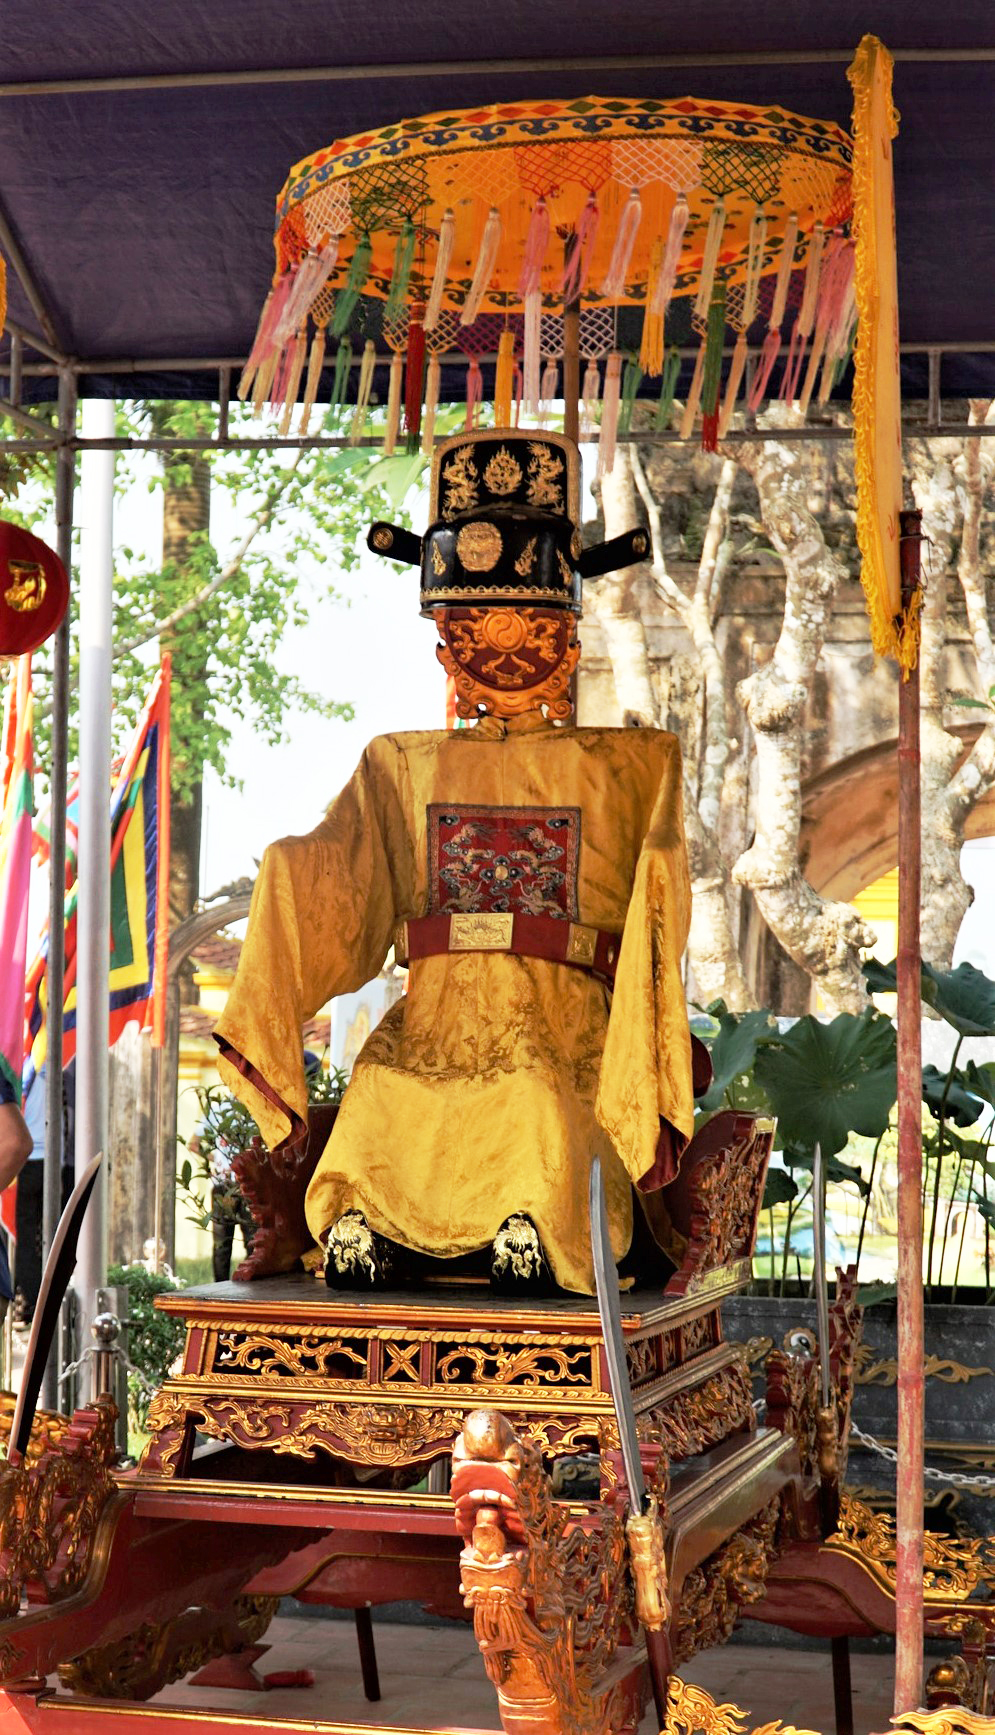 Lễ hội 10 năm tổ chức 1 lần gắn với dòng họ Nguyễn Cảnh nổi tiếng xứ Nghệ được công nhận Di sản văn hóa- Ảnh 2.